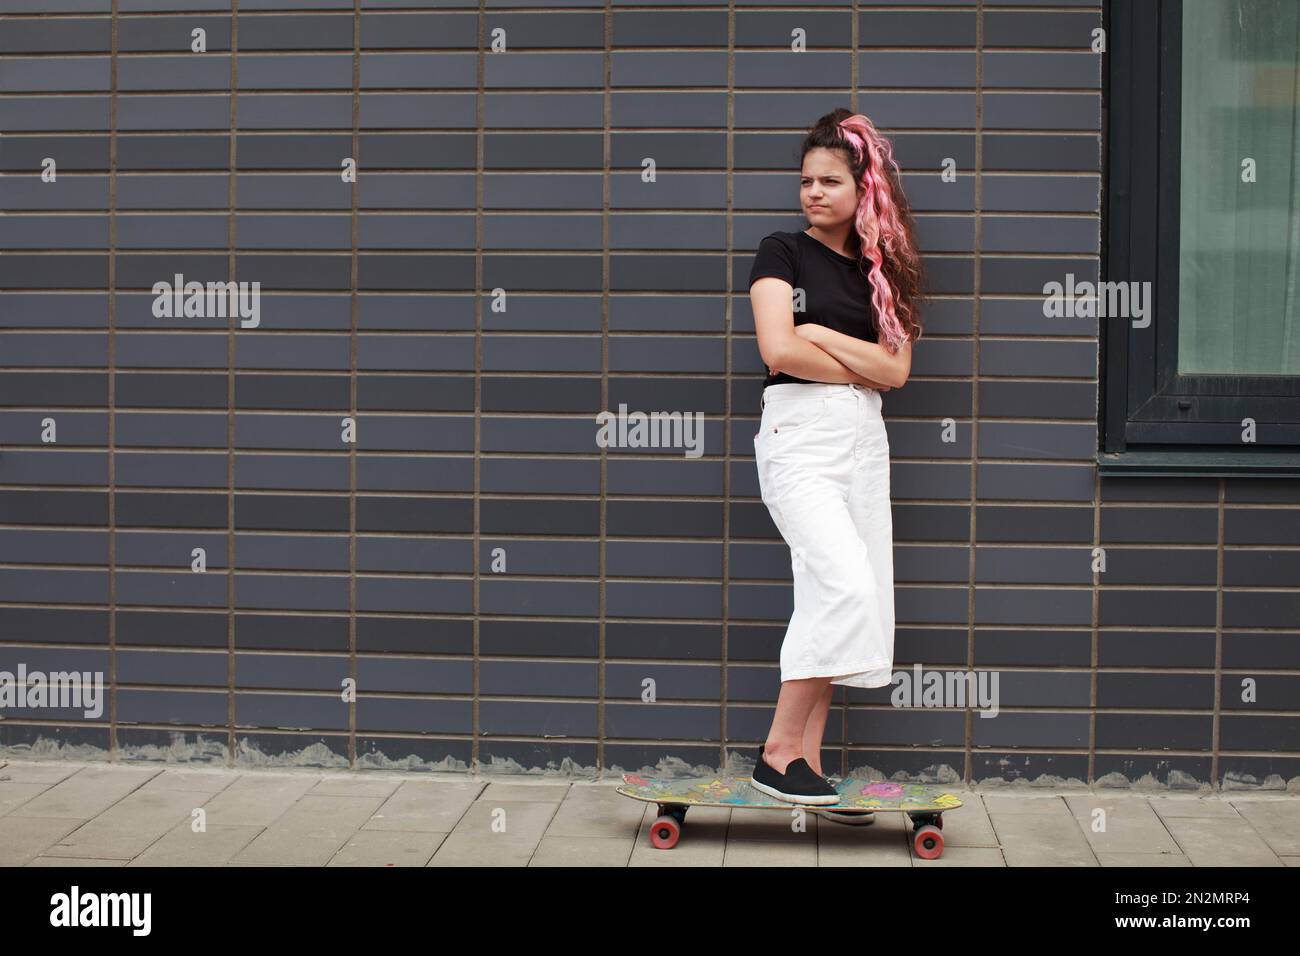 Trauriges Teenager-Mädchen mit Skateboard steht in voller Länge auf der Straße neben einer Wand aus grauem Ziegelstein. Die Krise der Adoleszenz. Authentisches Lifestyle-Porträt von teena Stockfoto